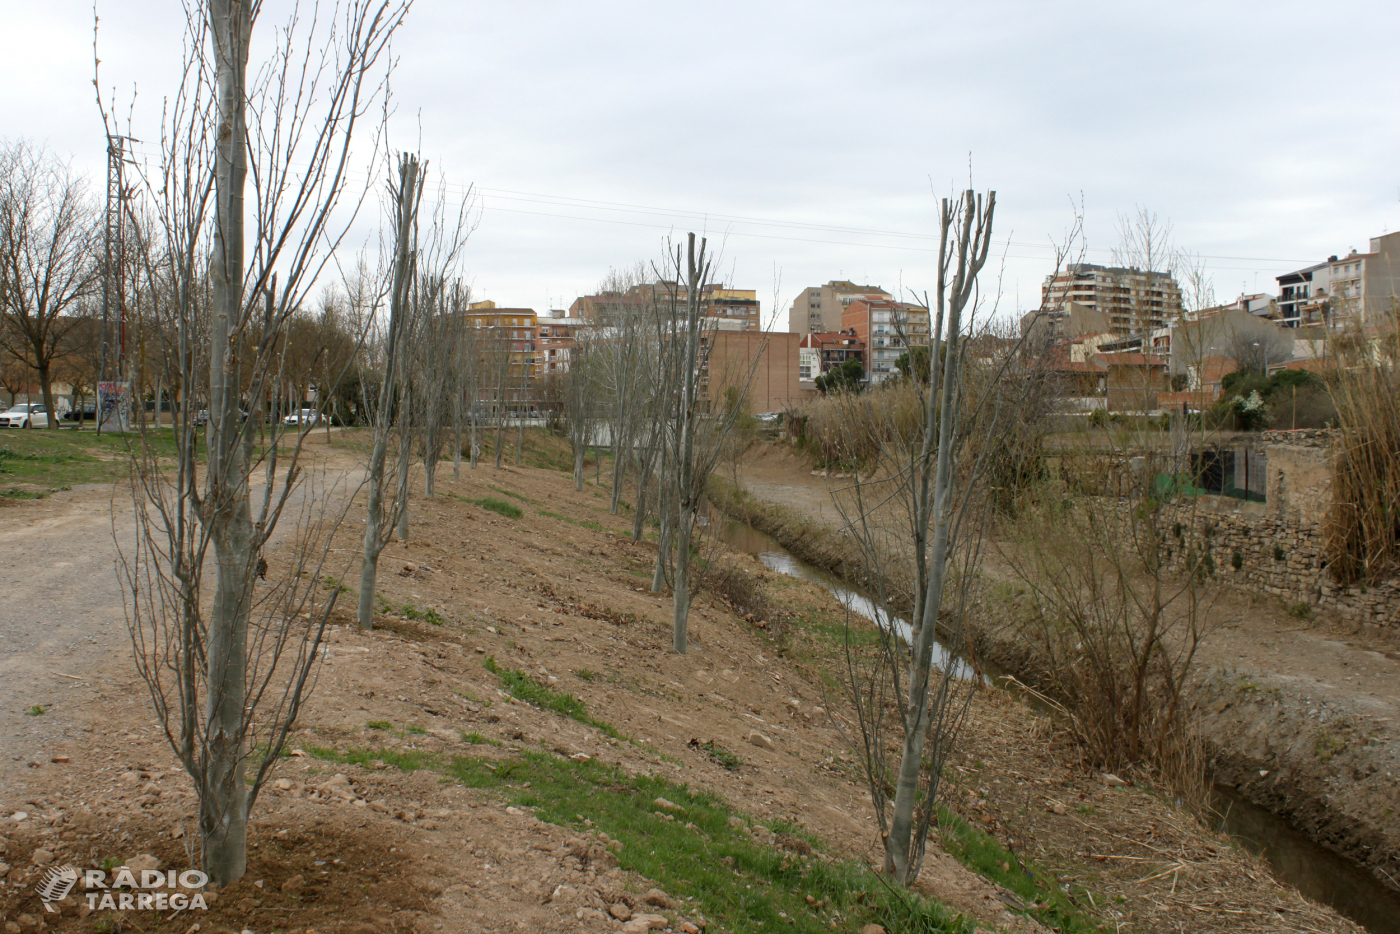 L’Ajuntament de Tàrrega ultima els treballs de neteja i plantació d’arbres a la llera del riu Ondara